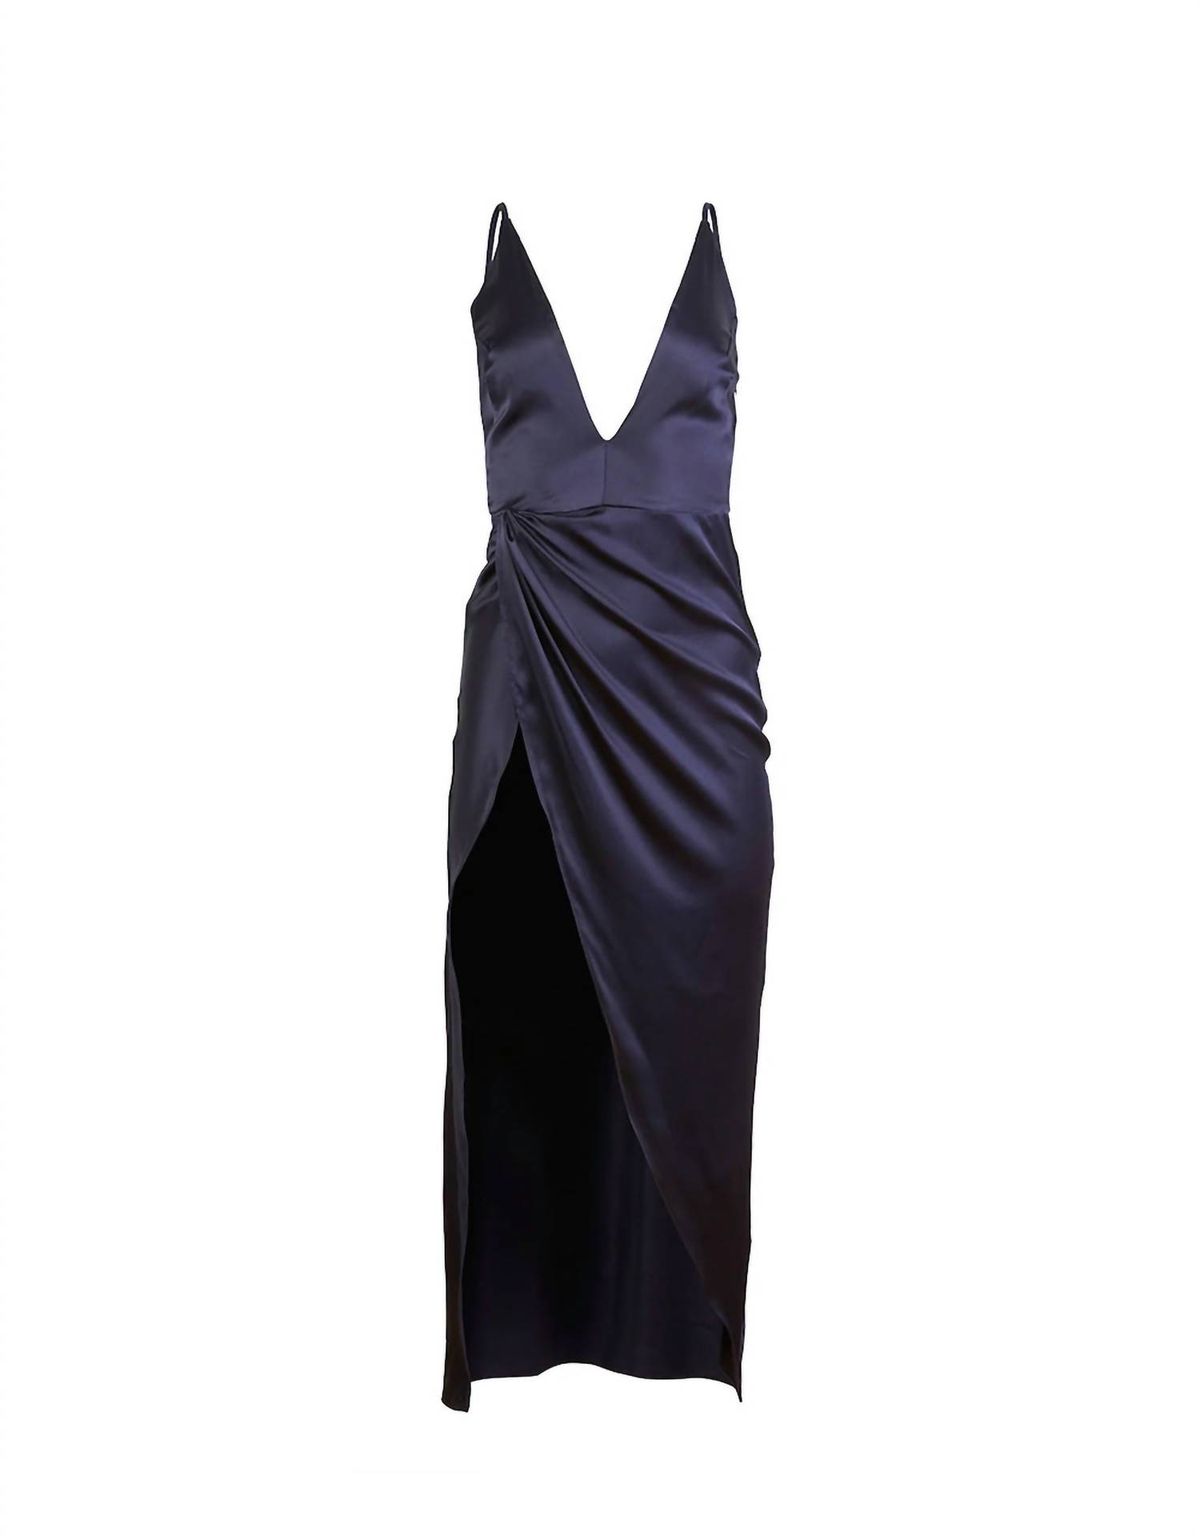 Style 1-201478577-2696 Fleur Du Mal Size L Plunge Satin Blue Side Slit Dress on Queenly